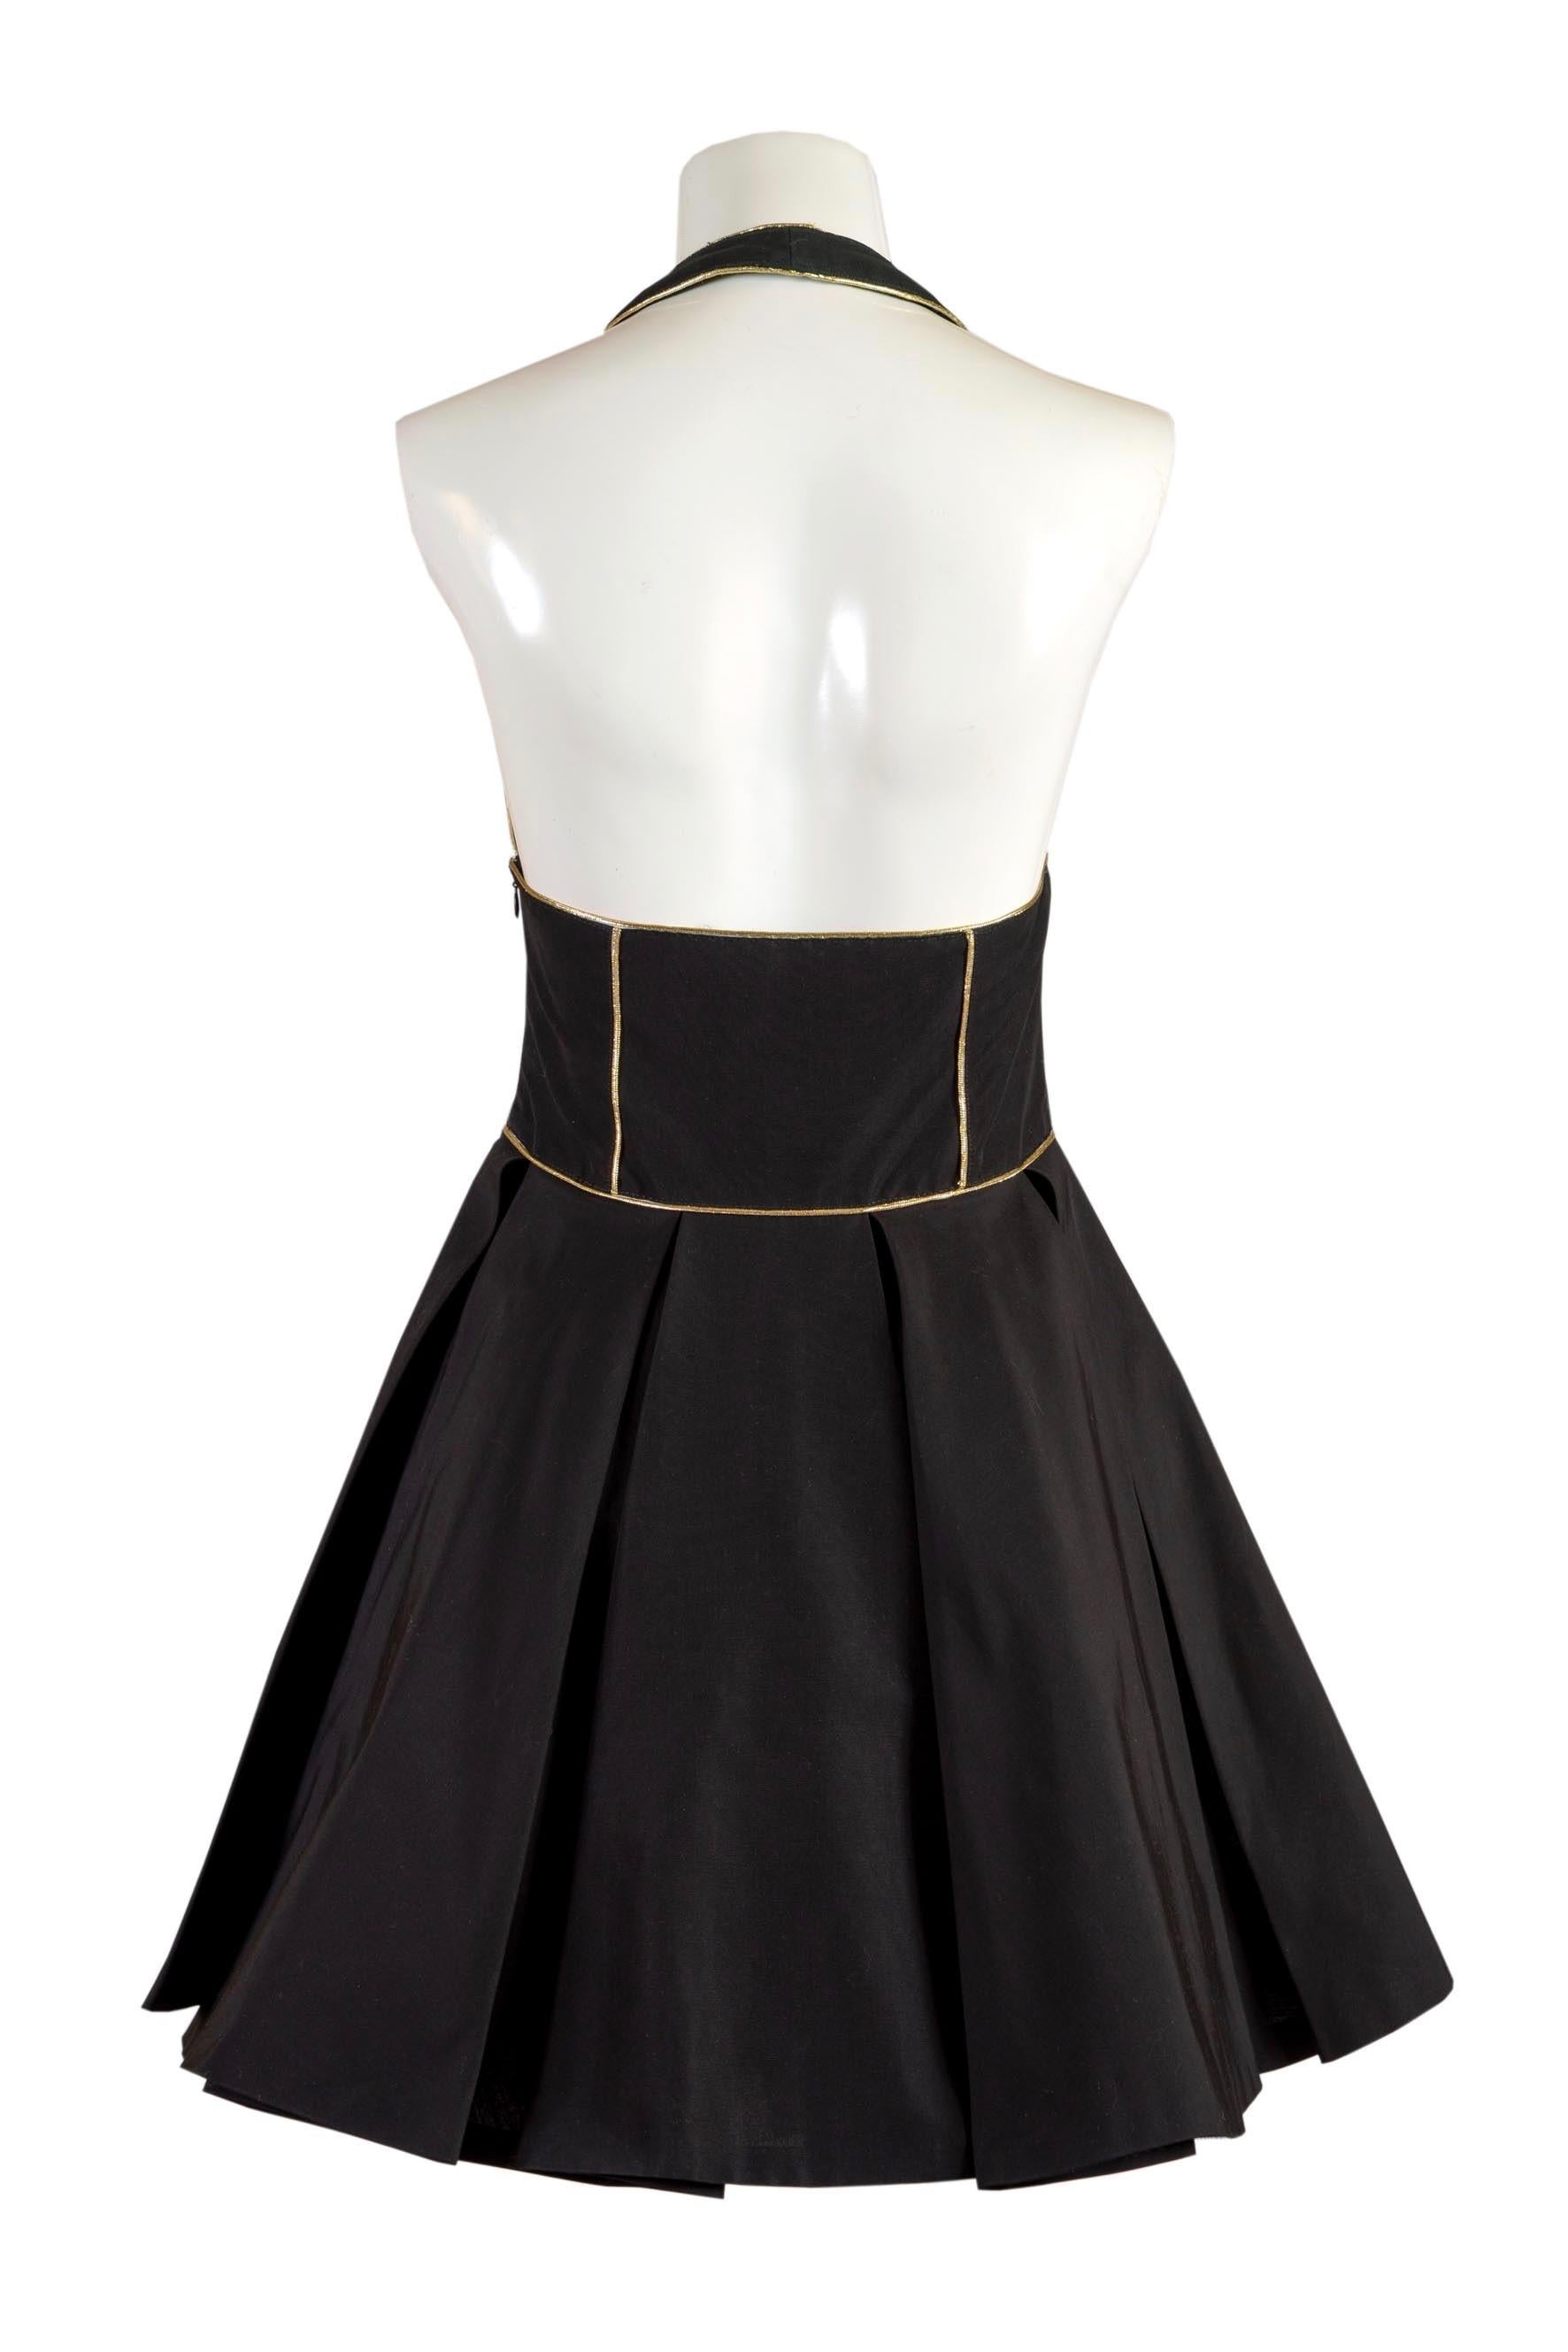 GIANNI VERSACE VERSUS Mini robe noire printemps/été 1993 taille 28/42 Excellent état - En vente à Rubiera, RE